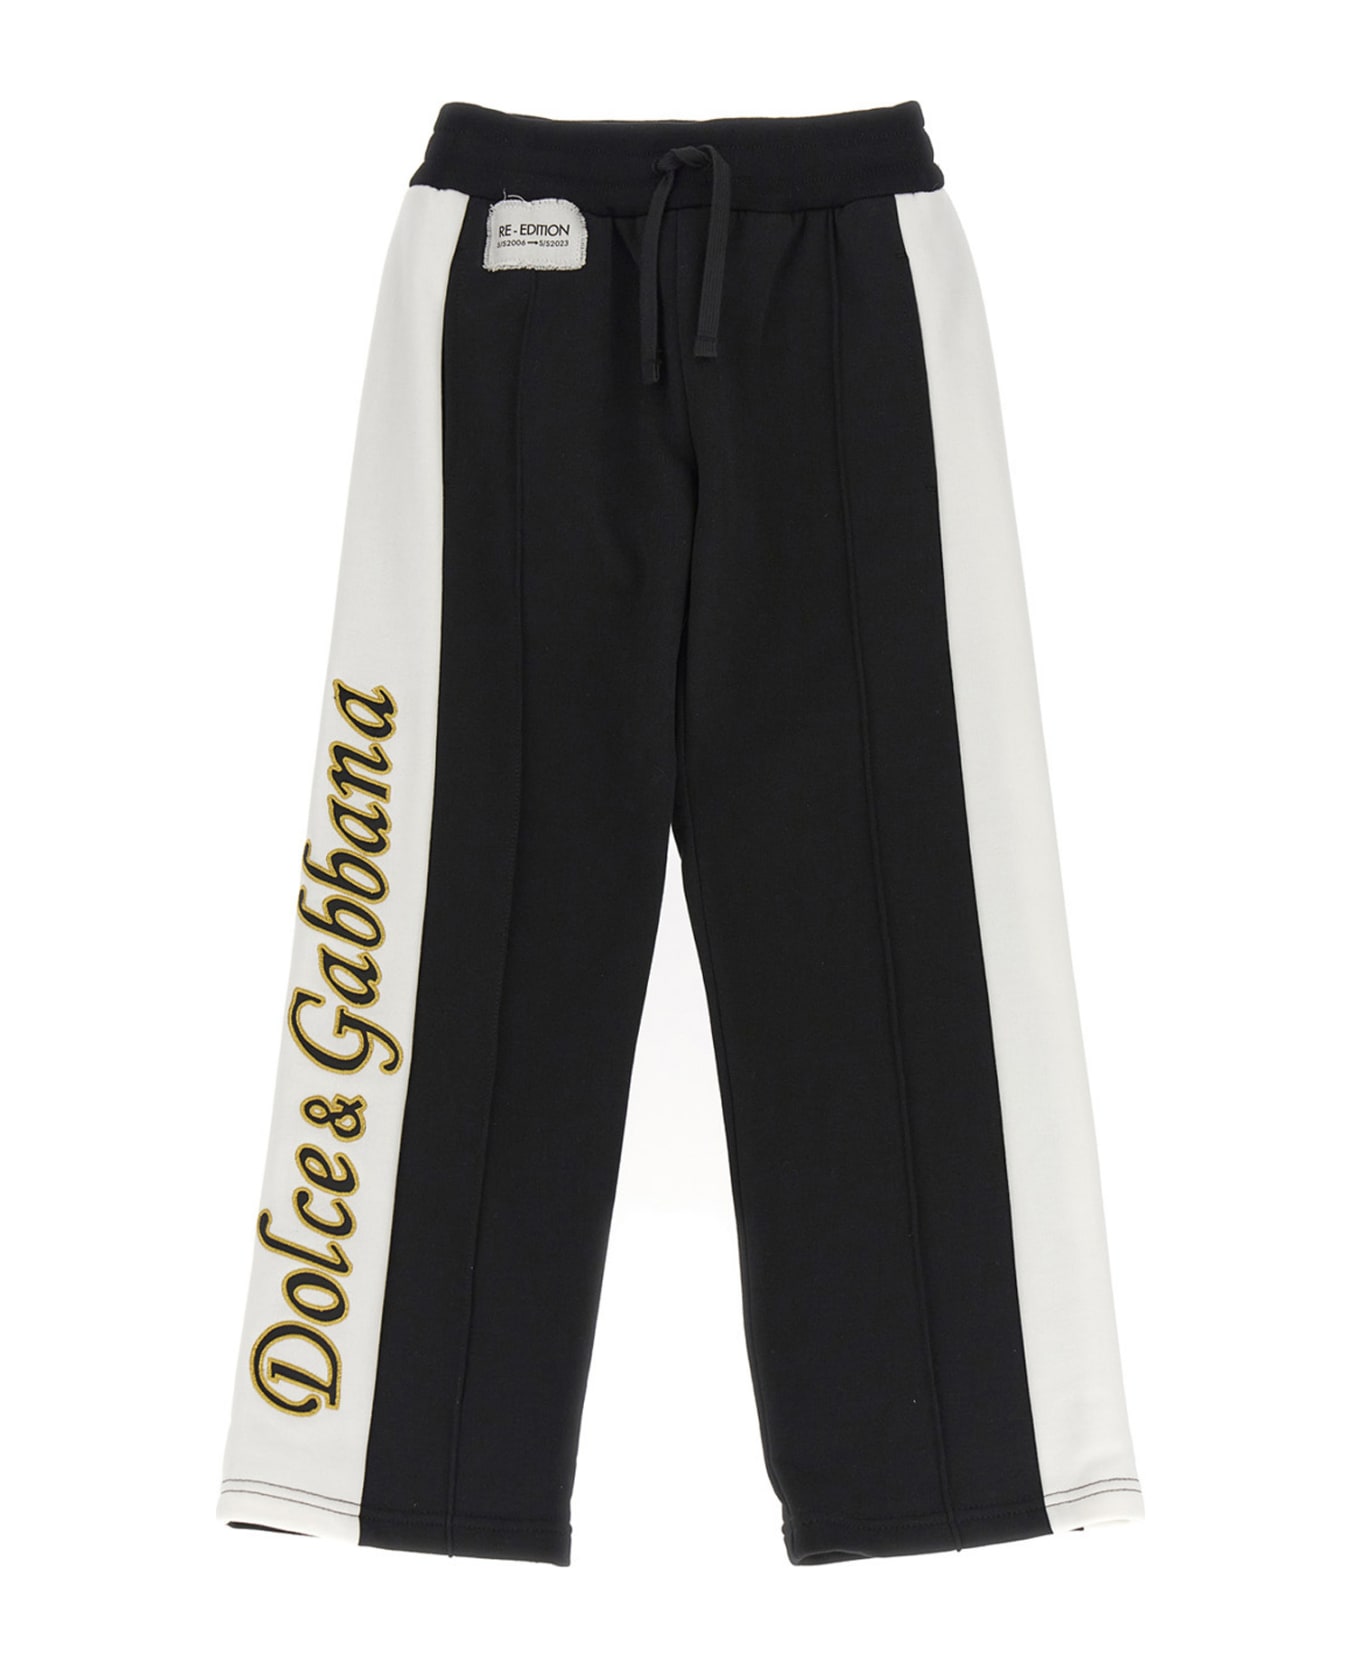 Dolce & Gabbana 're-edition Ss2006' Pants - White/Black